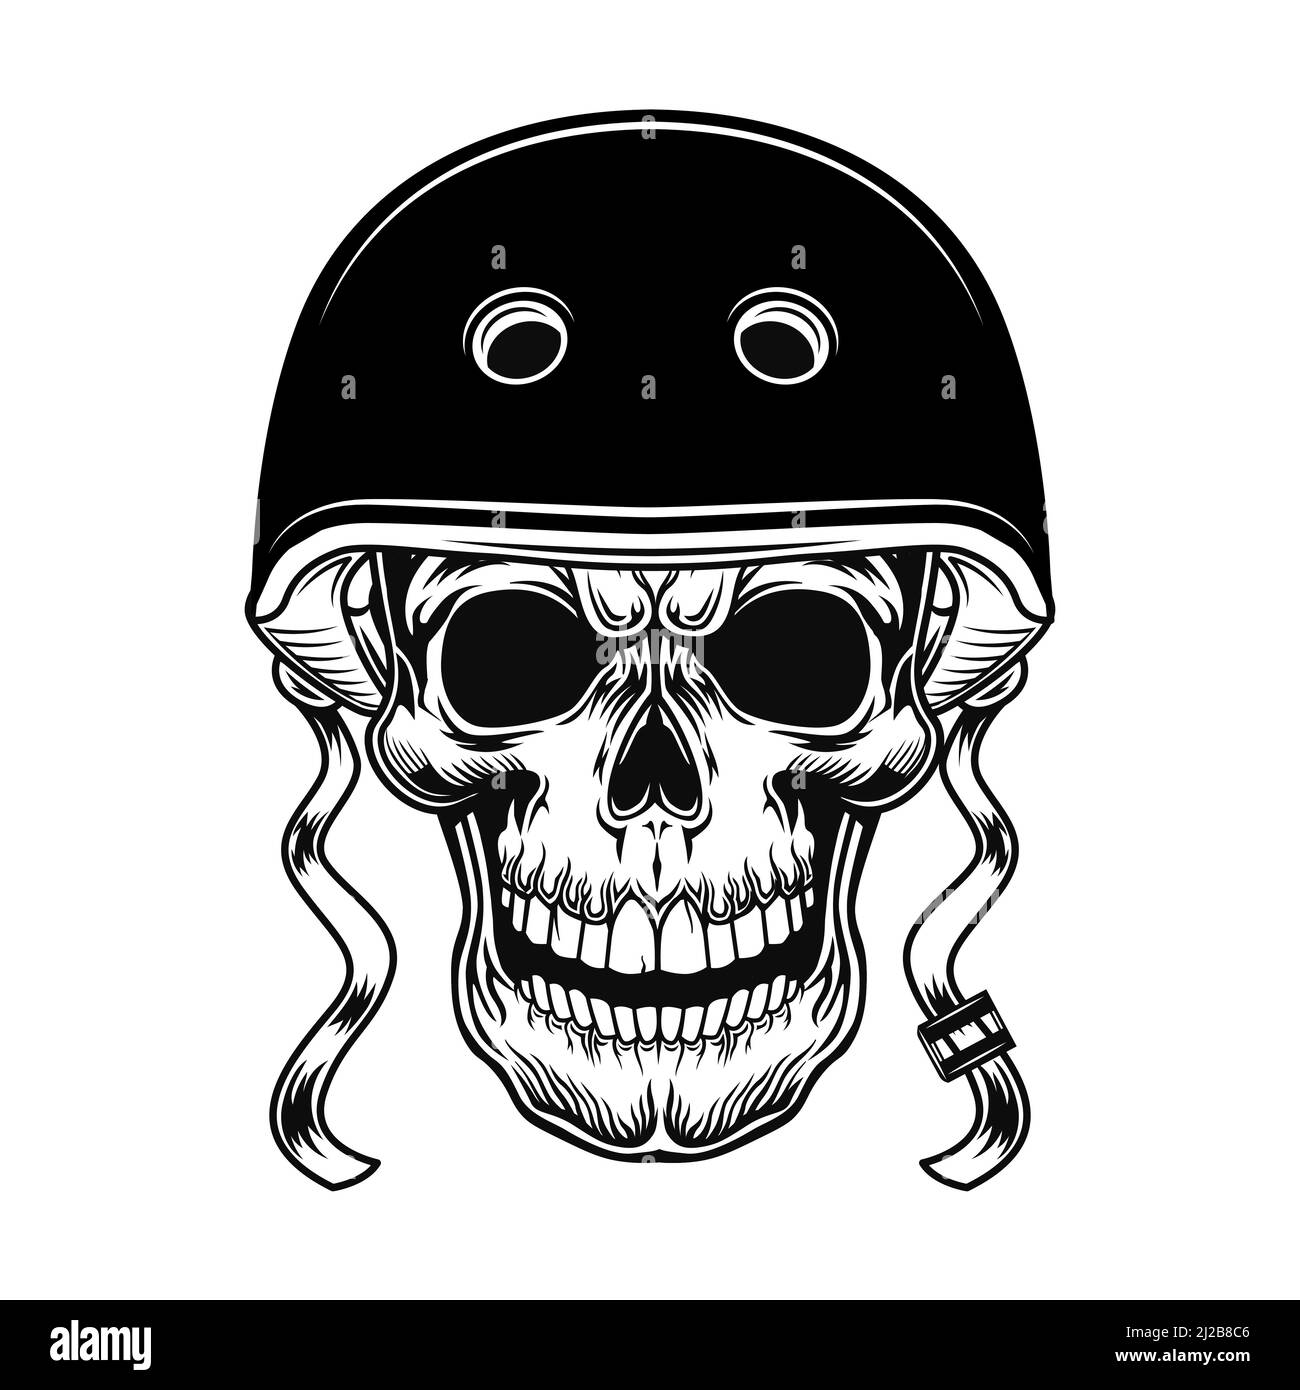 Skull of biker vector illustration. Head of character in helmet for ...